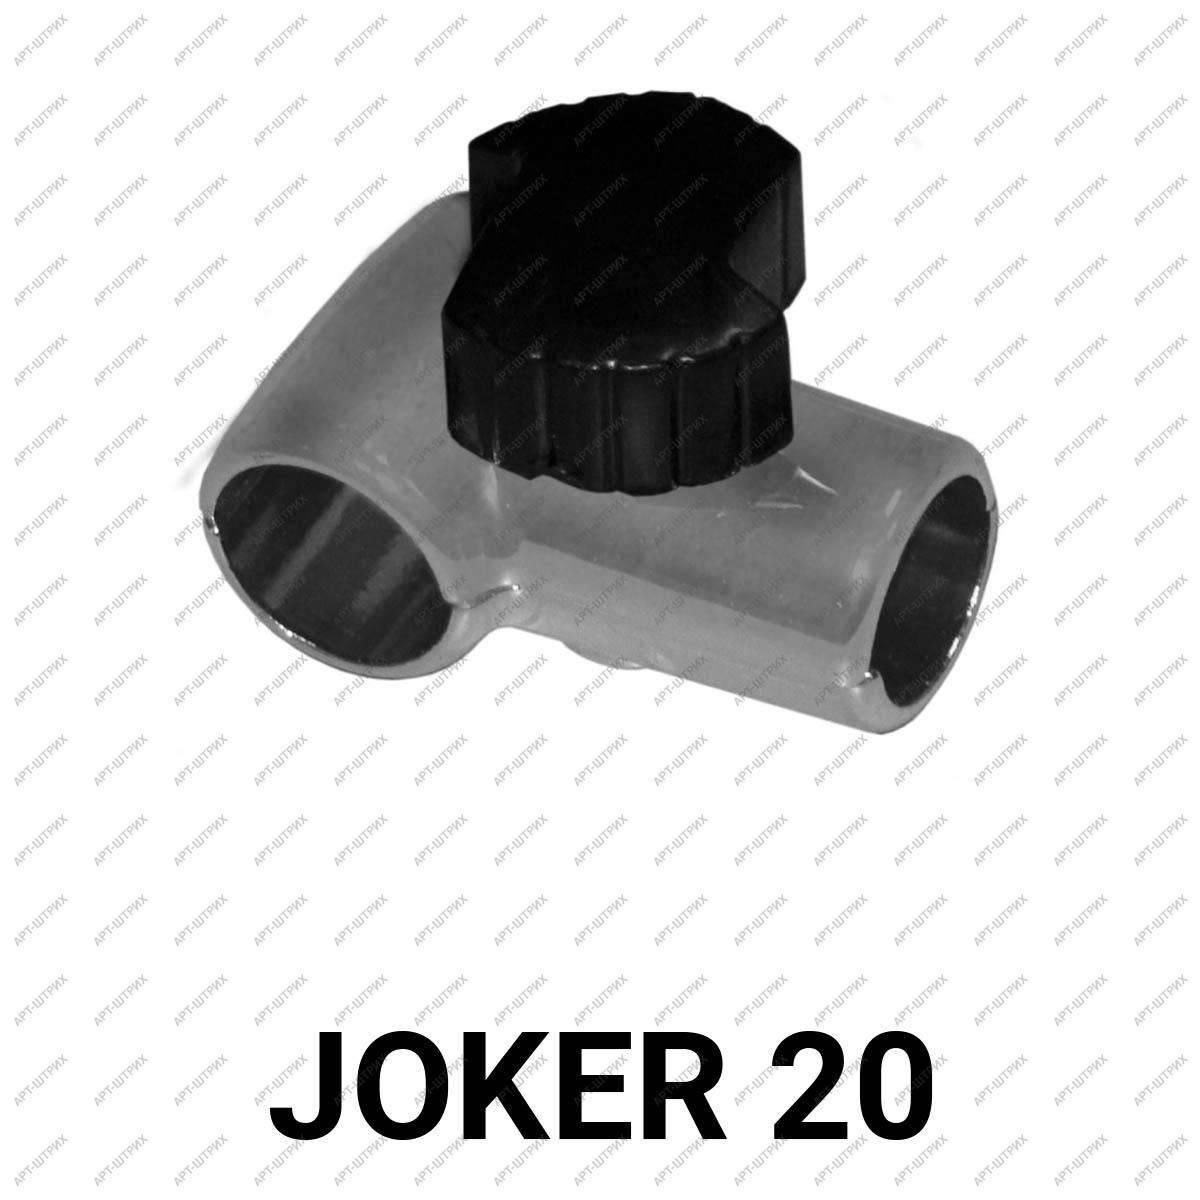 Joker 20 Крепеж Т образный с затягивание без ключа